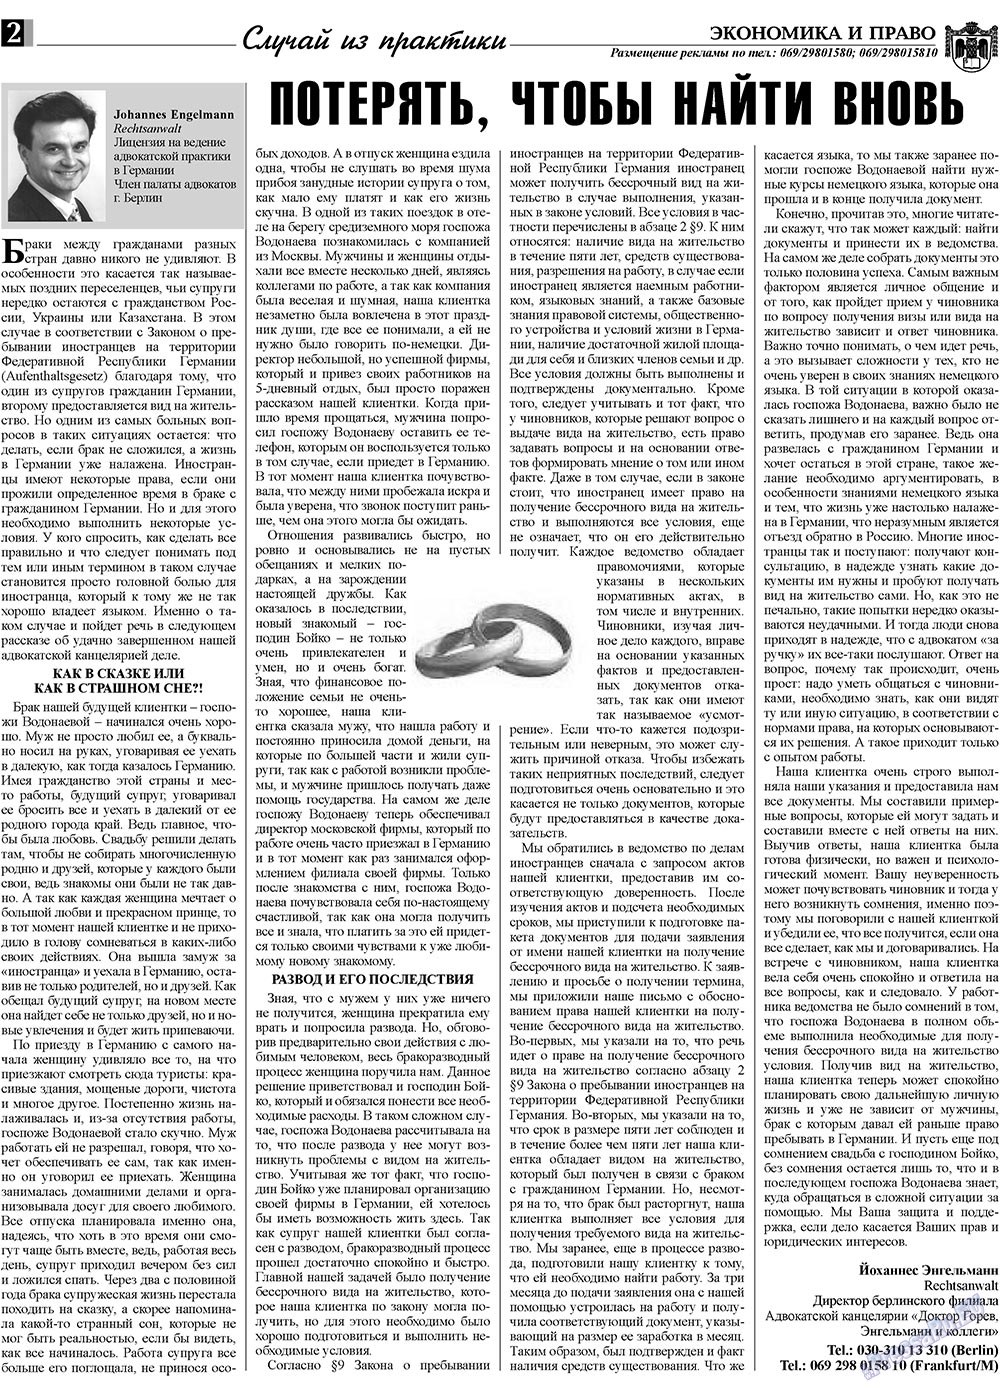 Экономика и право, газета. 2009 №8 стр.2